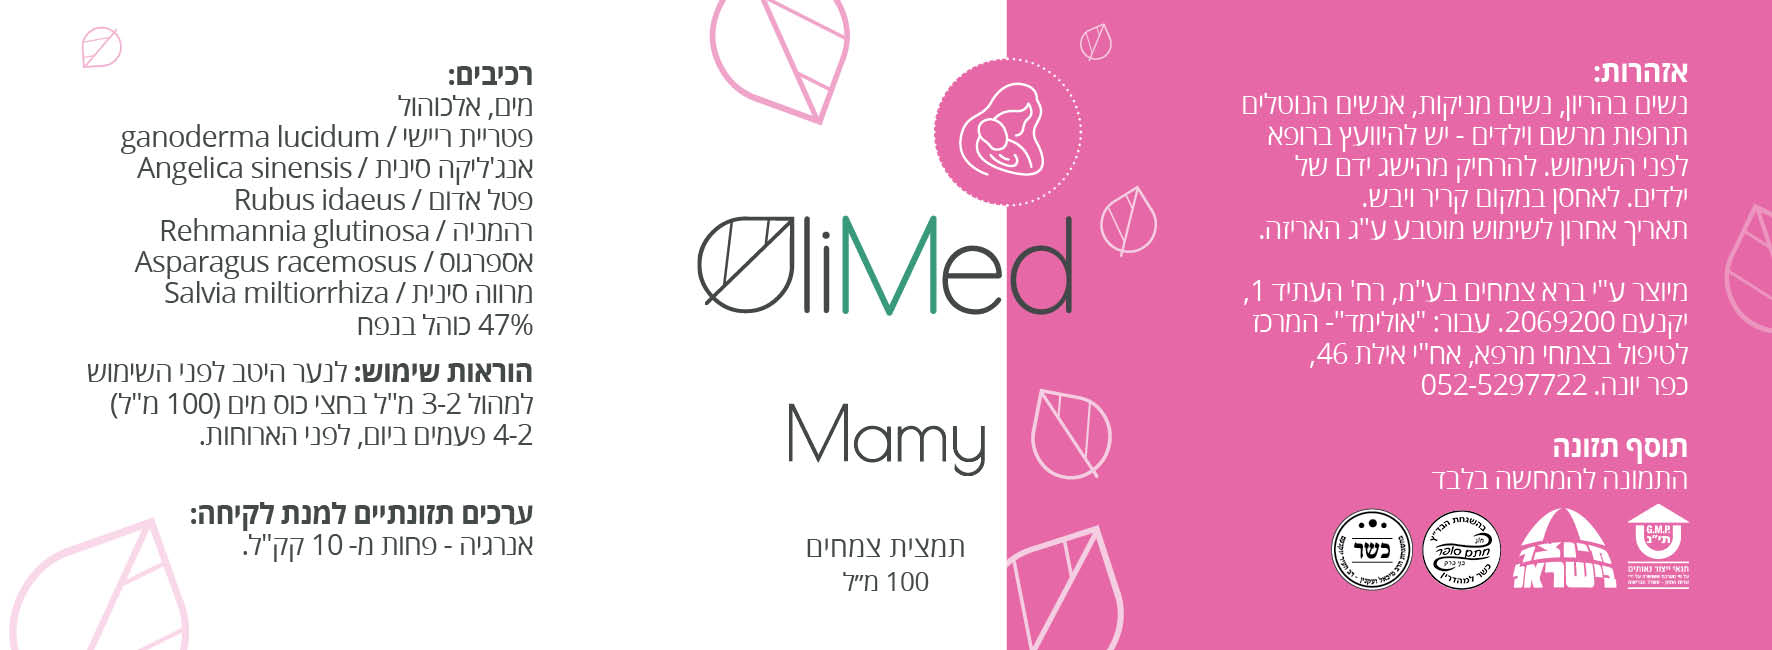 Olimed_Mamy